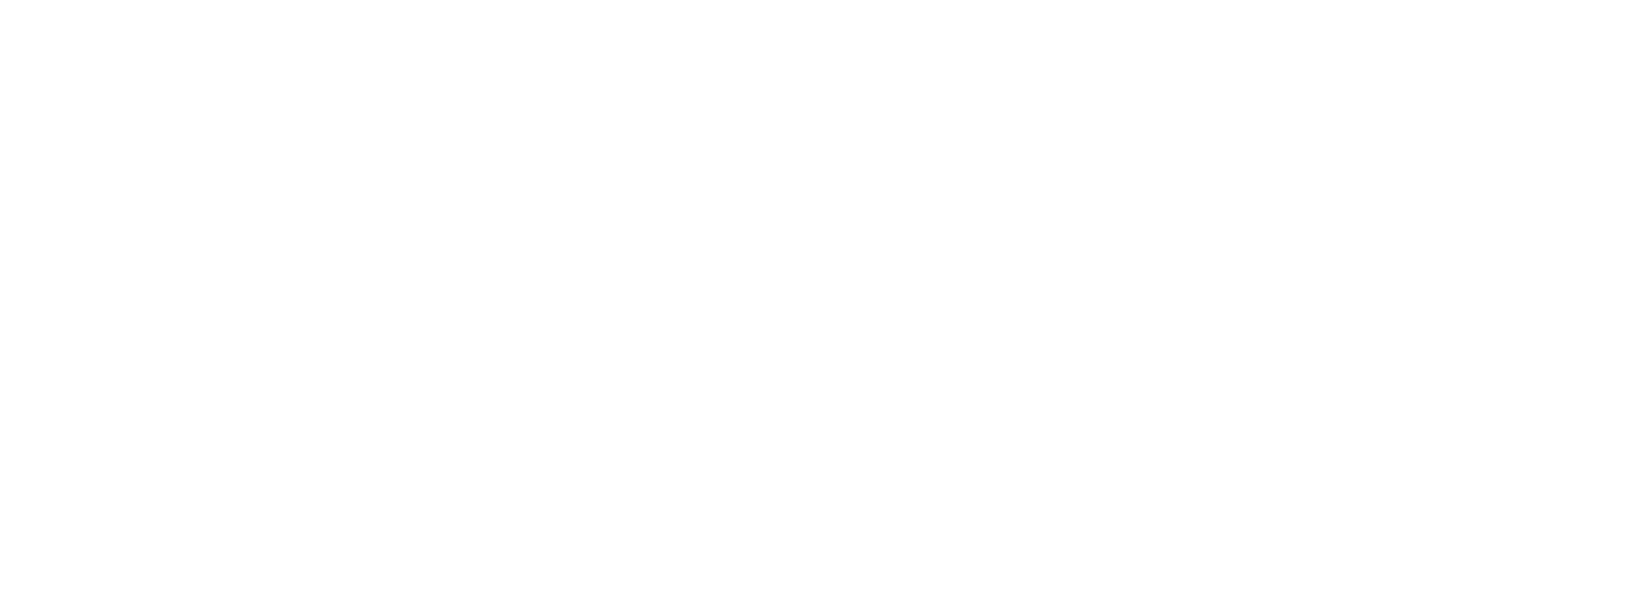 Acuity tagline with logo